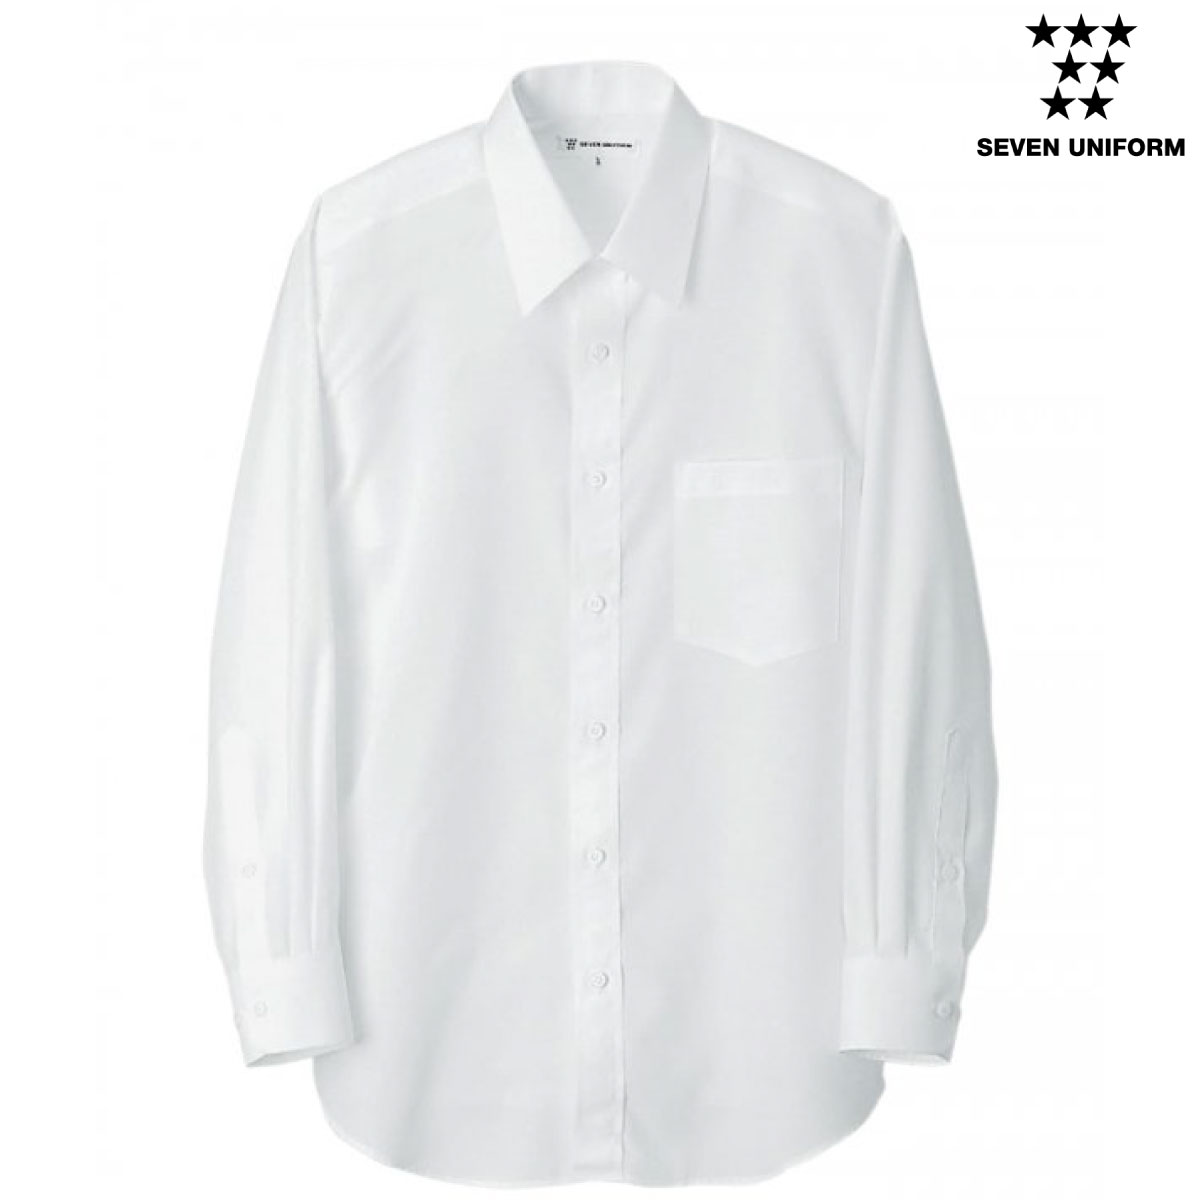 CH1783 シャツ（男性用） プレーンな白いシャツですが、生地に抜群の 形態安定性があることろが一番の特徴です。 【MATERIAL】 ■素材:交織タッサー ■混率:ポリエステル90％・綿10％ ■形態安定 ■吸水速乾 ■SR 【特長】 プレーンな白いシャツですが、生地に抜群の形態安定性があることろが一番の特徴です。洗濯シワや型崩れがしにくくノープレスでもきれいに着用できる生地になっています。工業洗濯にも対応しています。吸水性もありますので着用感も快適、汚れも落としやすい生地になっております。スーツと合わせるシャツとしても良し、もしくはエプロンと一緒にサービスするシーンもオススメです。シンプルがゆえに汎用性の高い白シャツになっています。前立てあり、左胸にポケットあり。長袖、レギュラーカラー。男性用。 【COLOR】 ■0.ホワイト 【SIZE】 ★☆同素材商品はこちら☆★